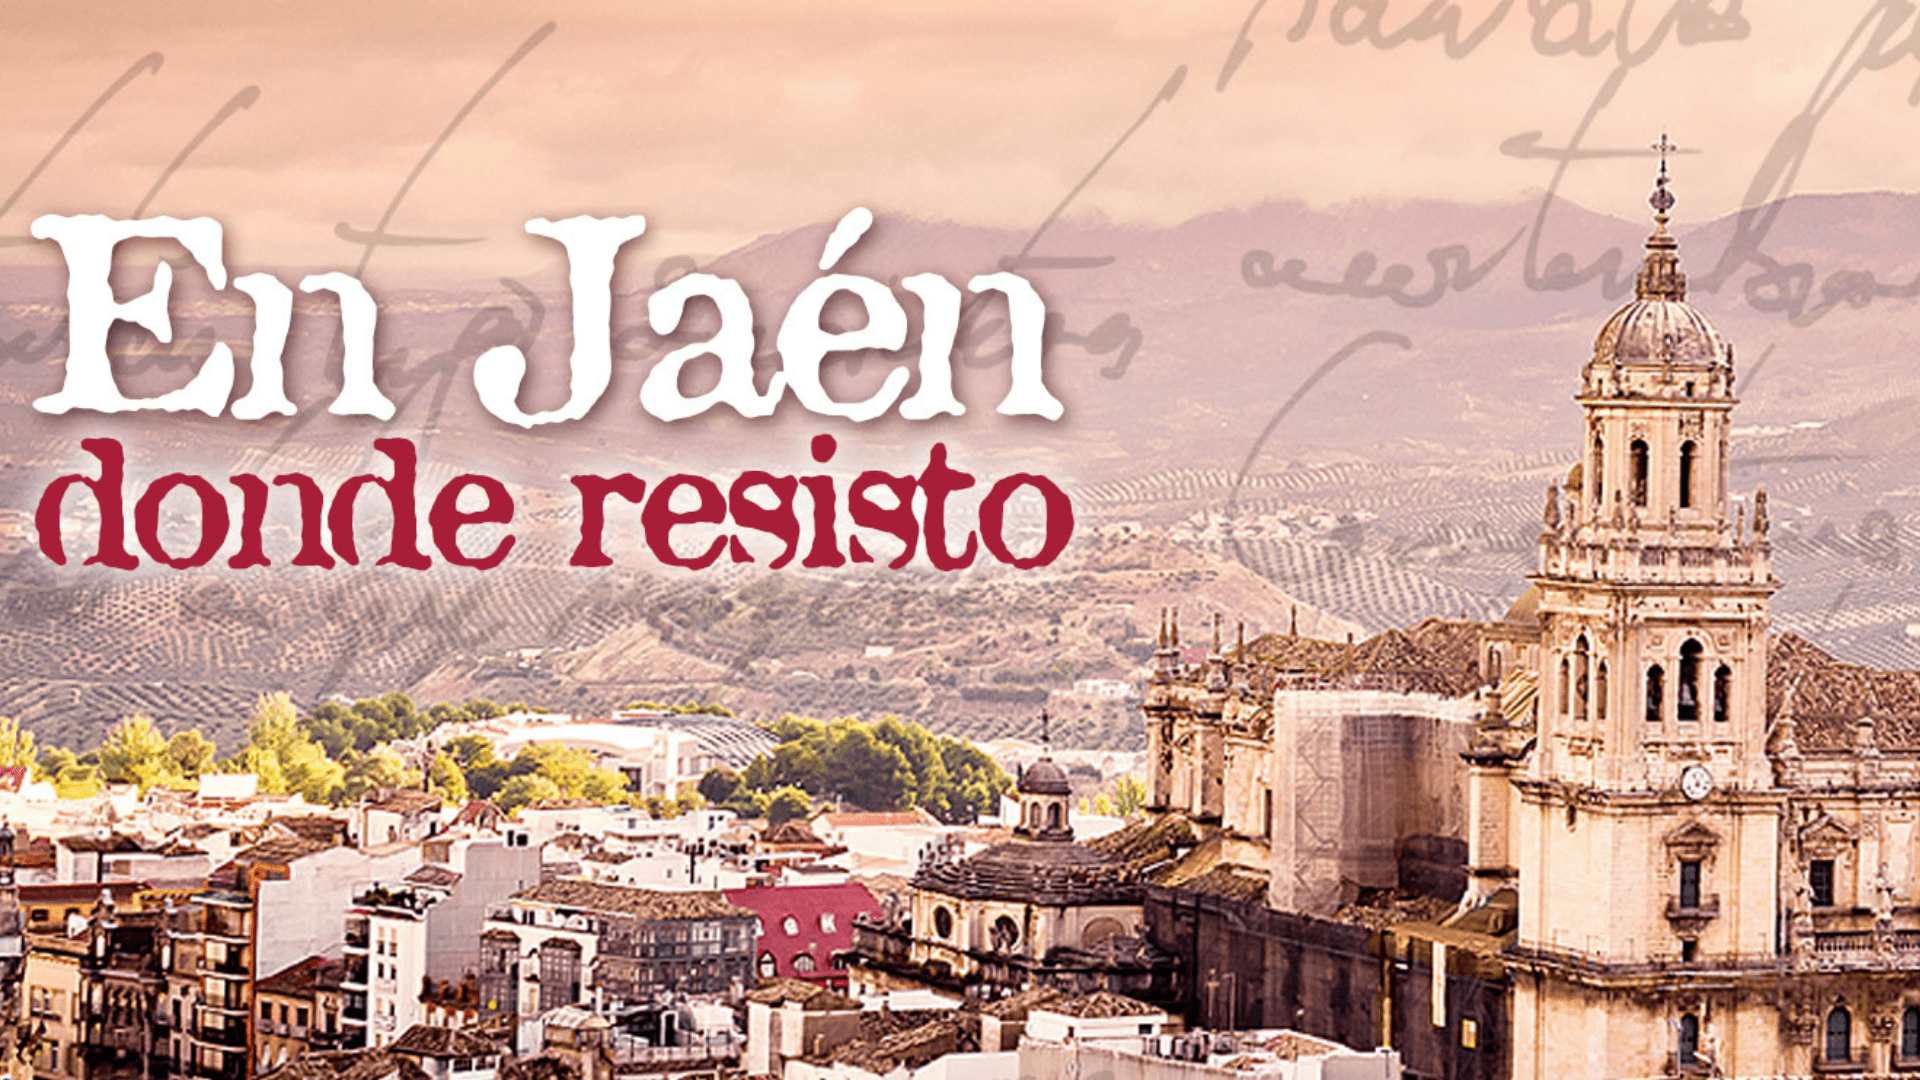 “En Jaén donde resisto”, seis años ya para no cruzarme de brazos